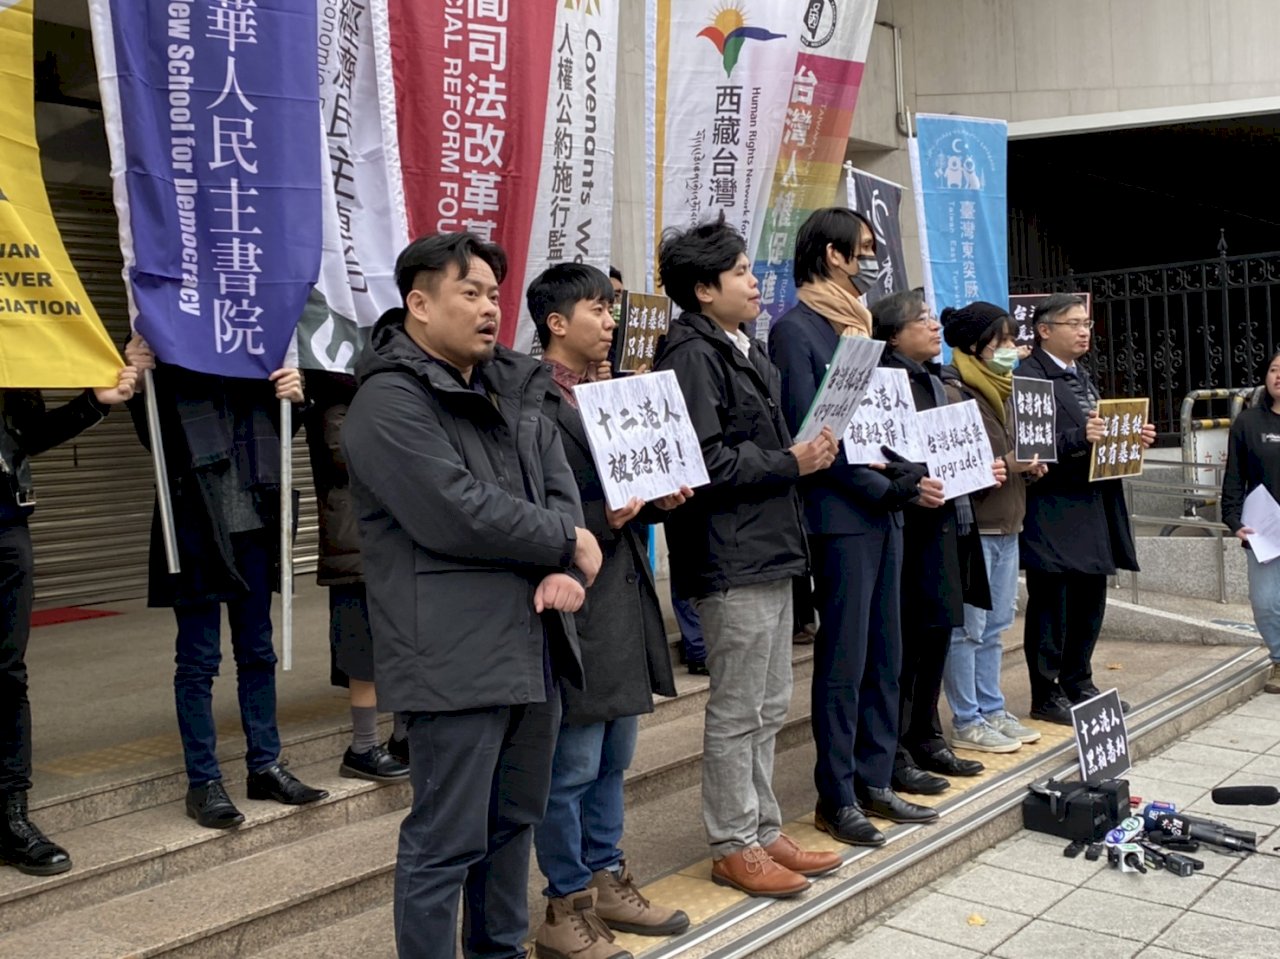 12港人遭中國黑箱審判 公民團體呼籲台灣升級援港